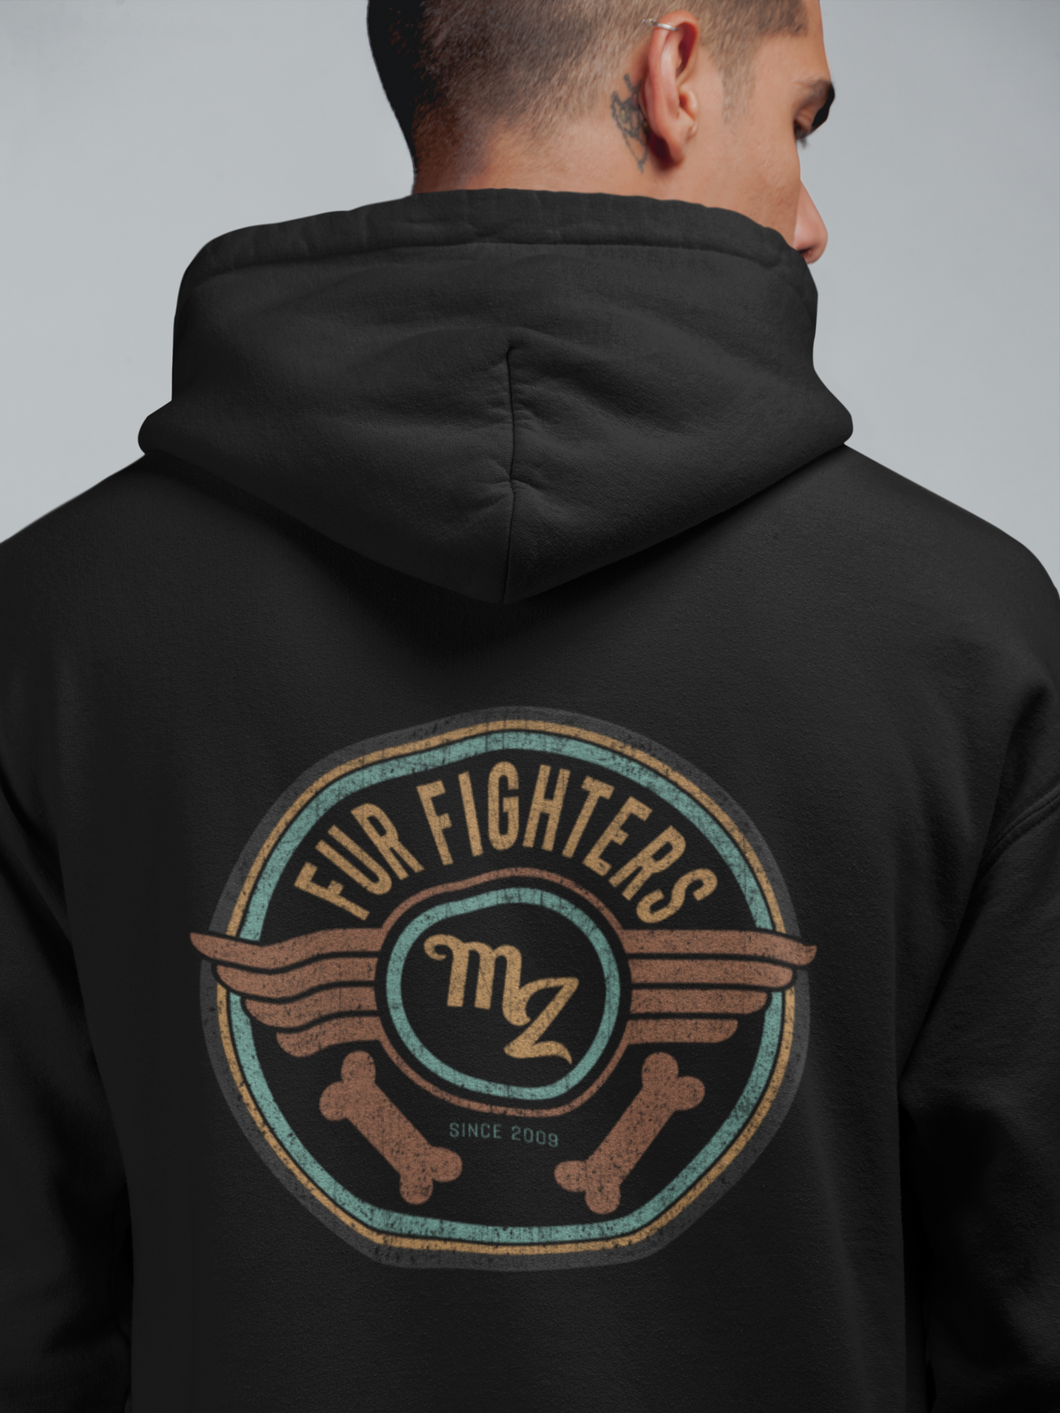 Fur Fighters Men's/ Unisex Zip Front Hoodie